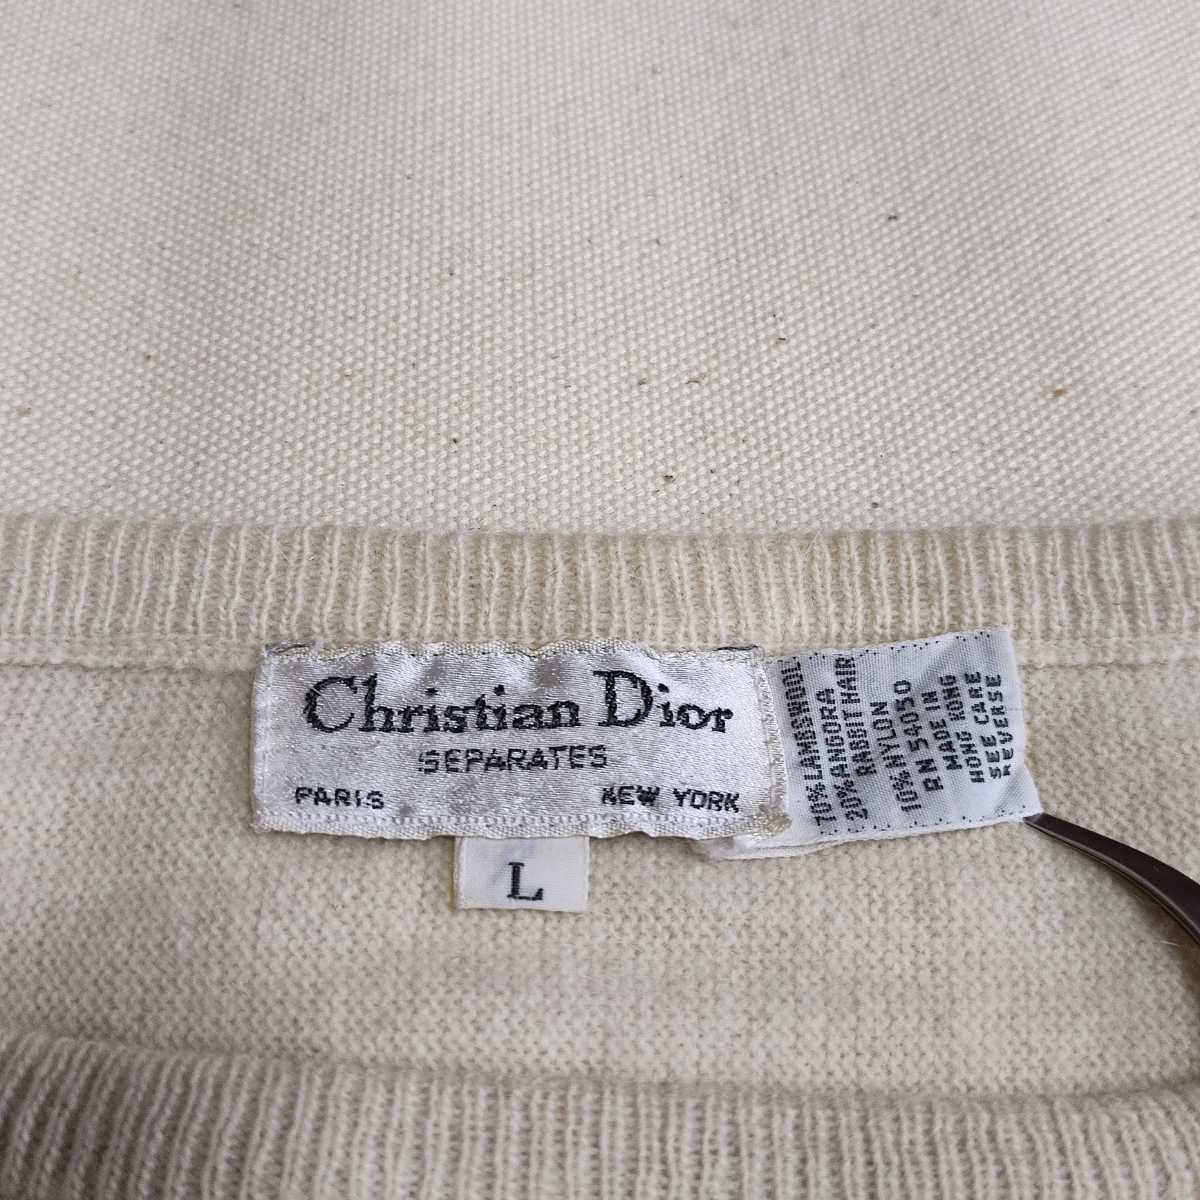 Christian Dior SEPARATES ディオール レディース ウール/アンゴラ ラビット混 ニット セーター 白/茶 L ショート丈 ヴィンテージ モード_画像5